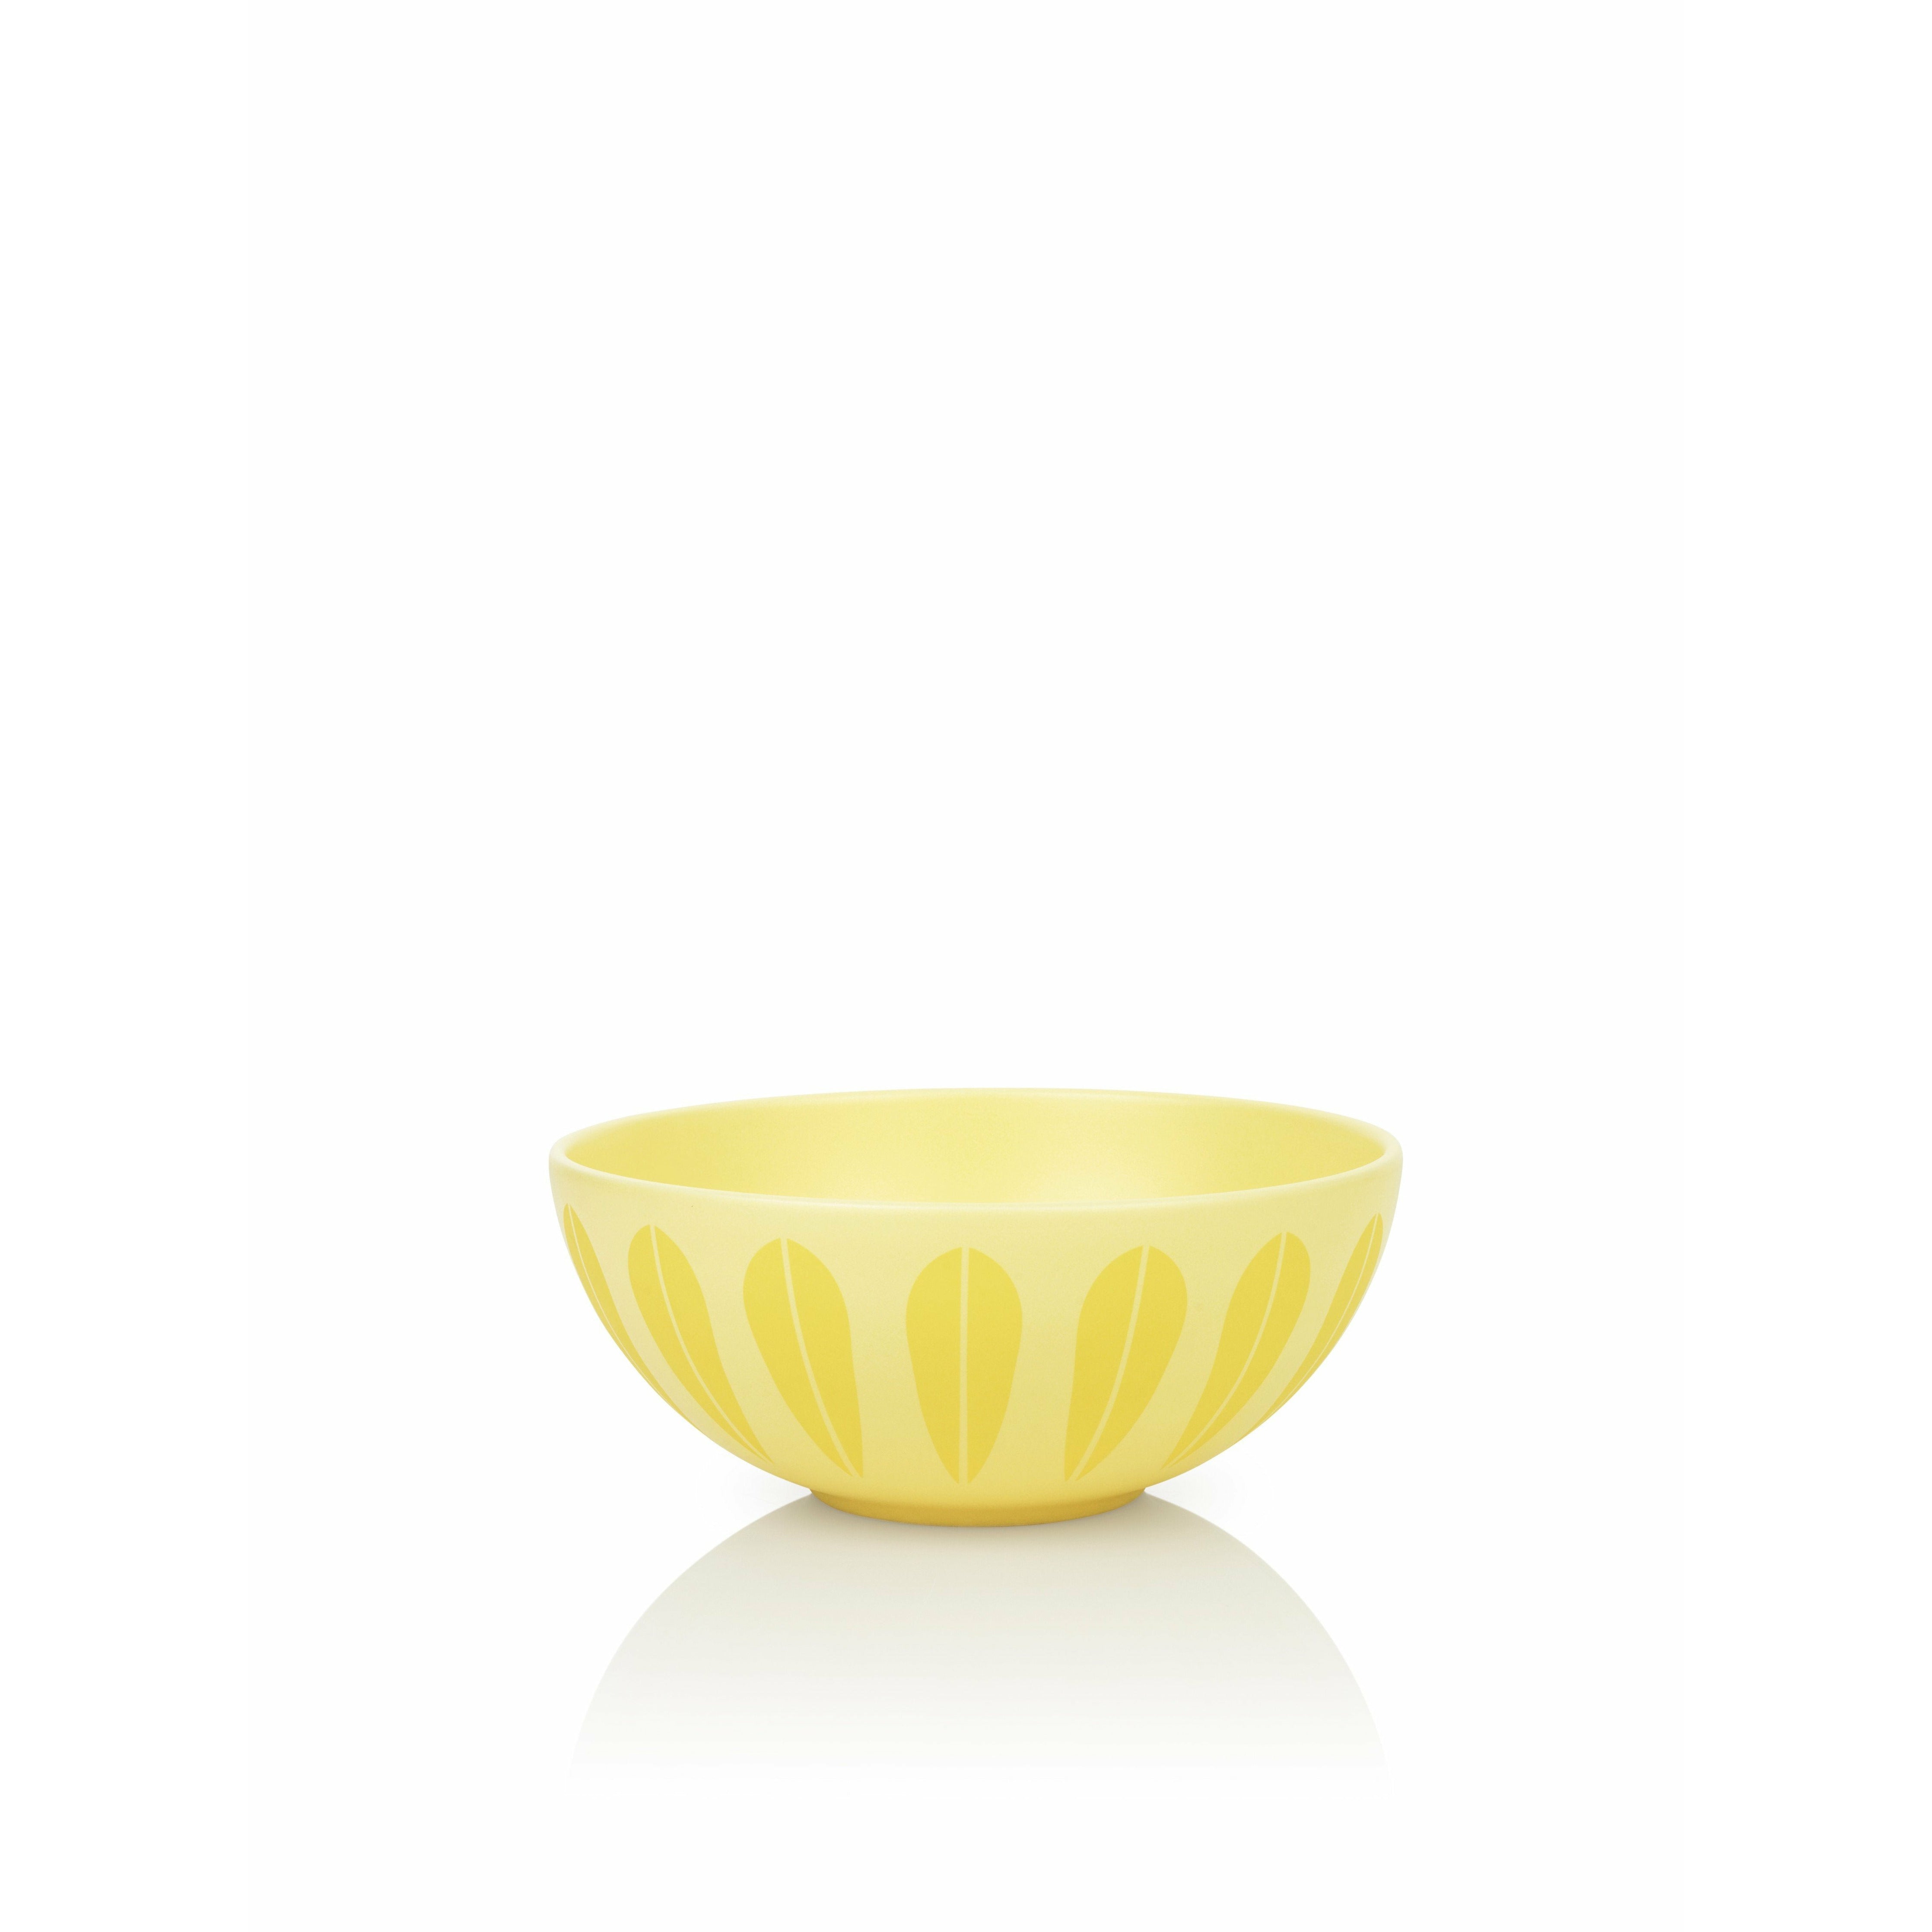 Lucie Kaas Arne Clausen Lotus Bowl geel, Ø24 cm